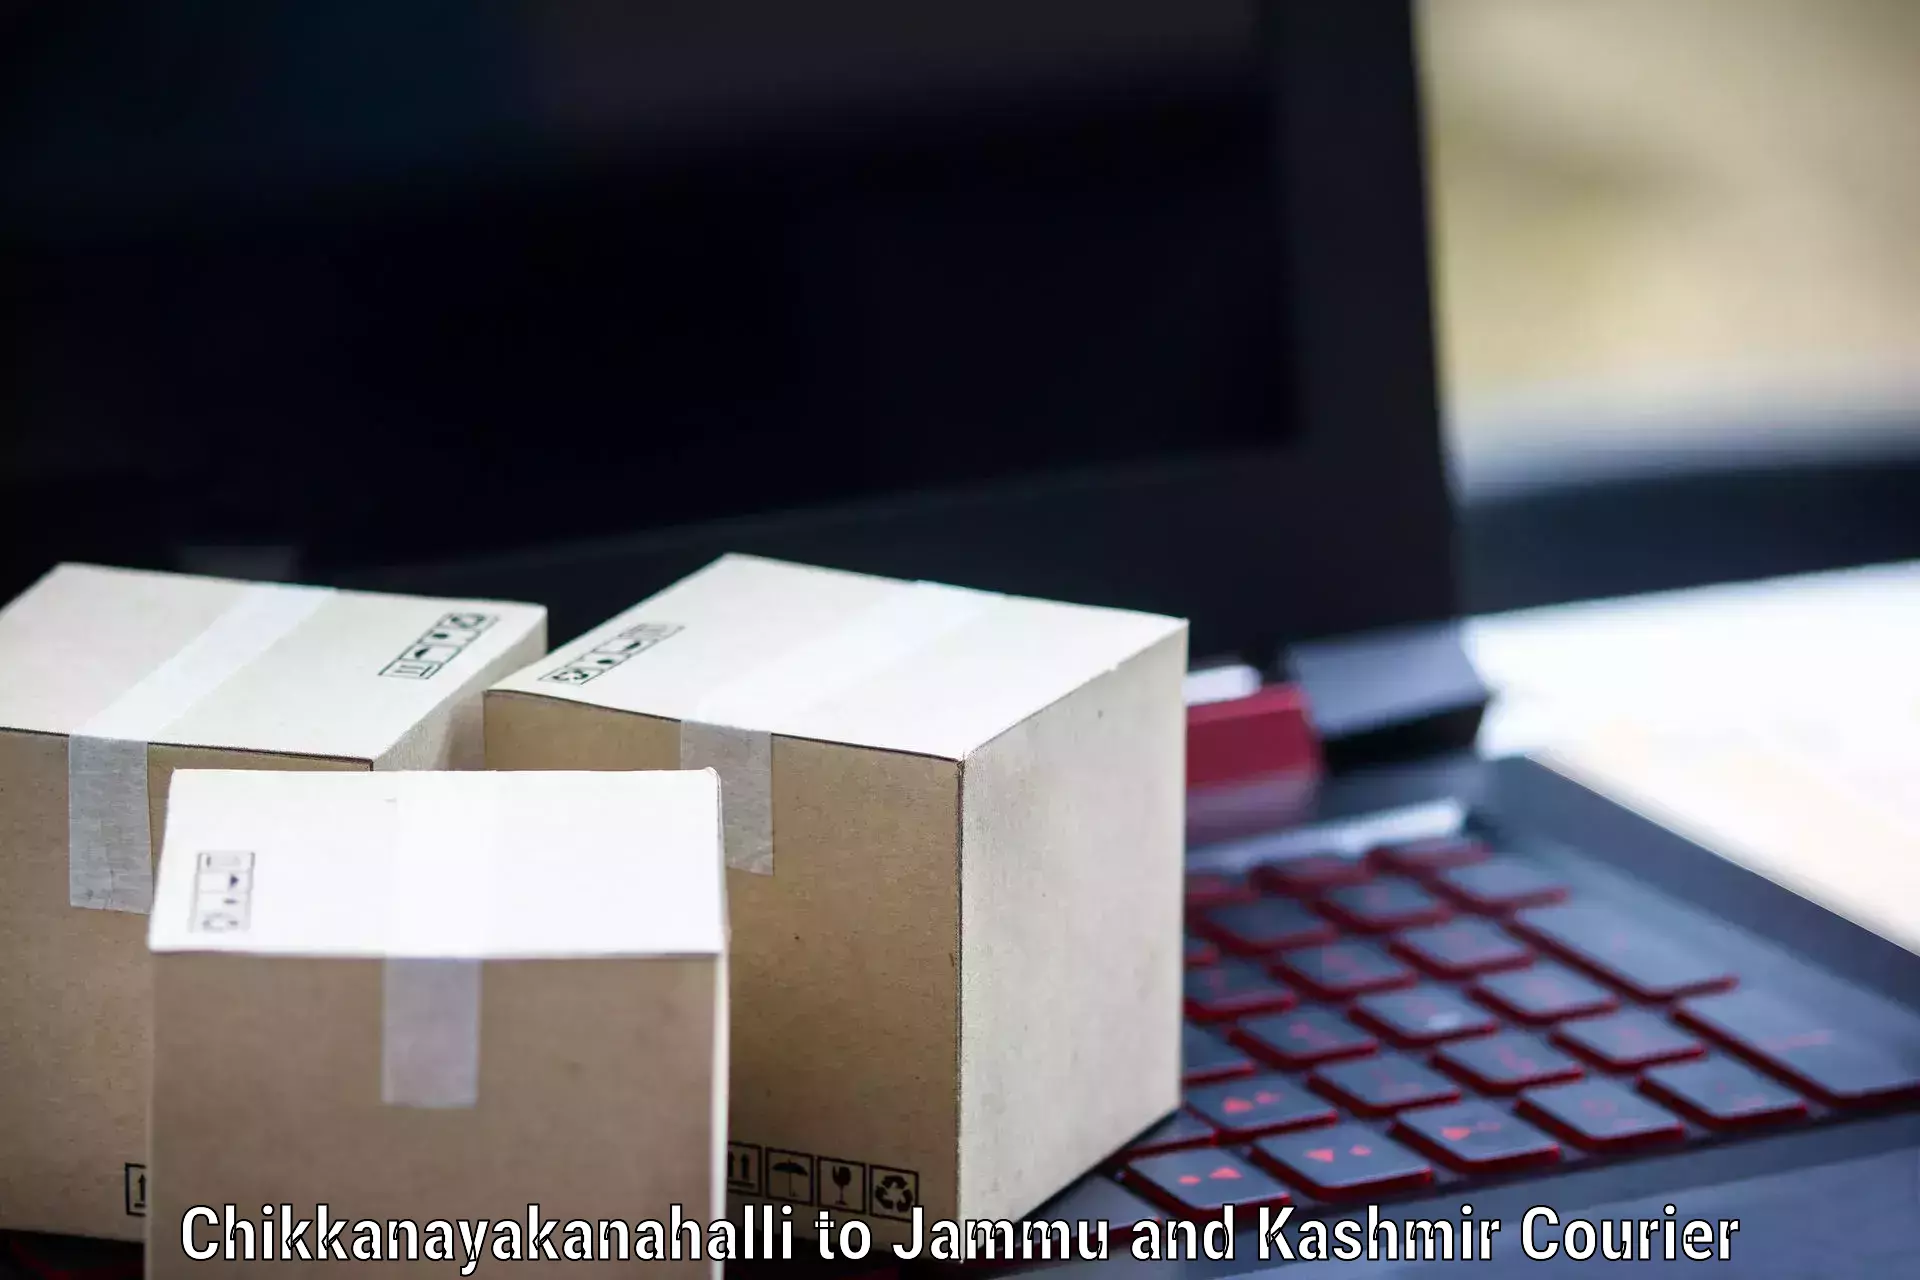 Full-service courier options Chikkanayakanahalli to Leh